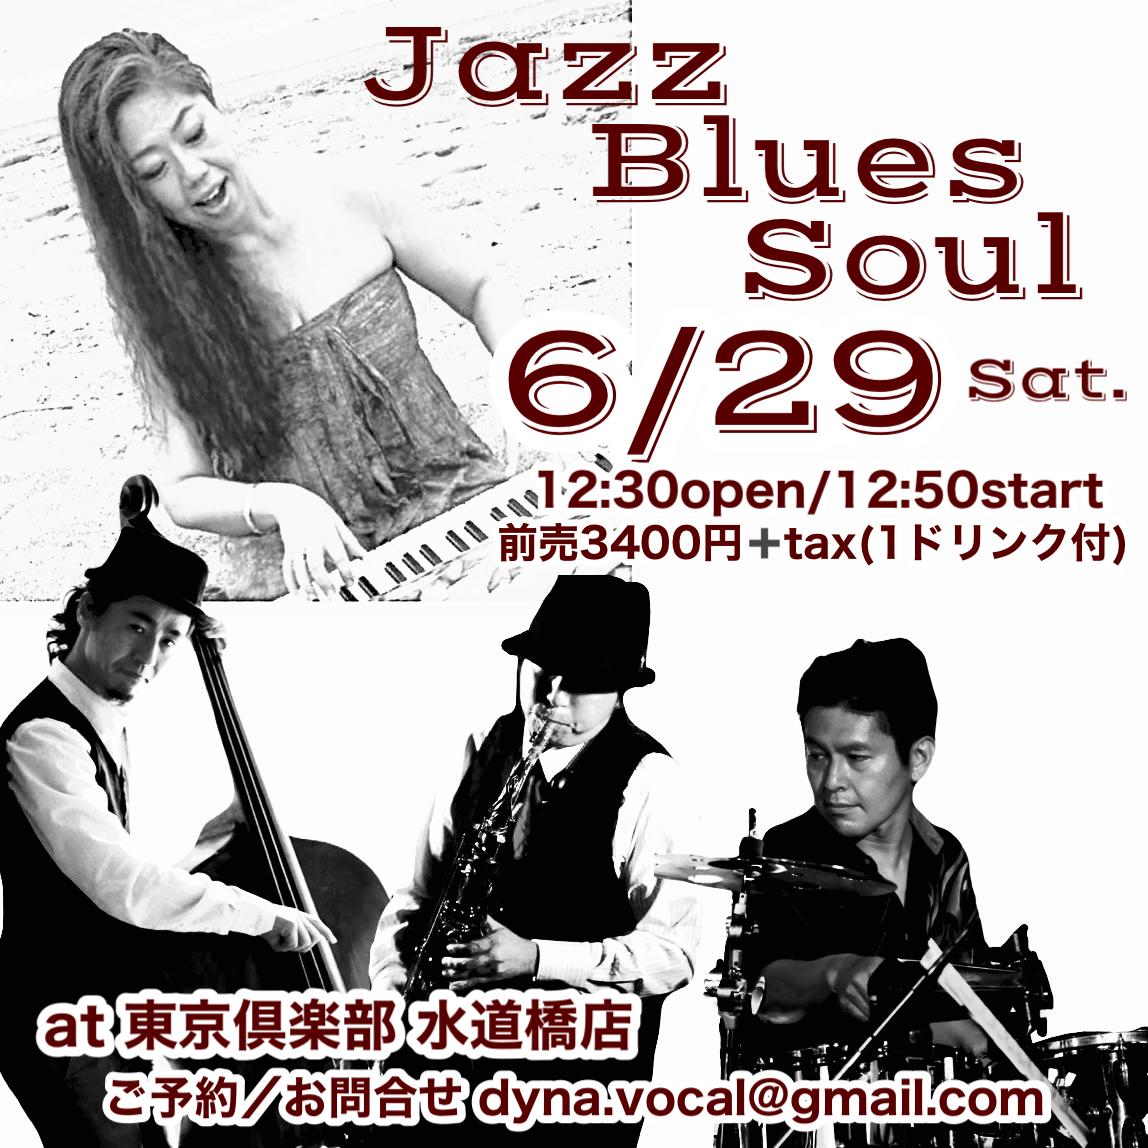 ダイナ’s Jazz ʻn Blues